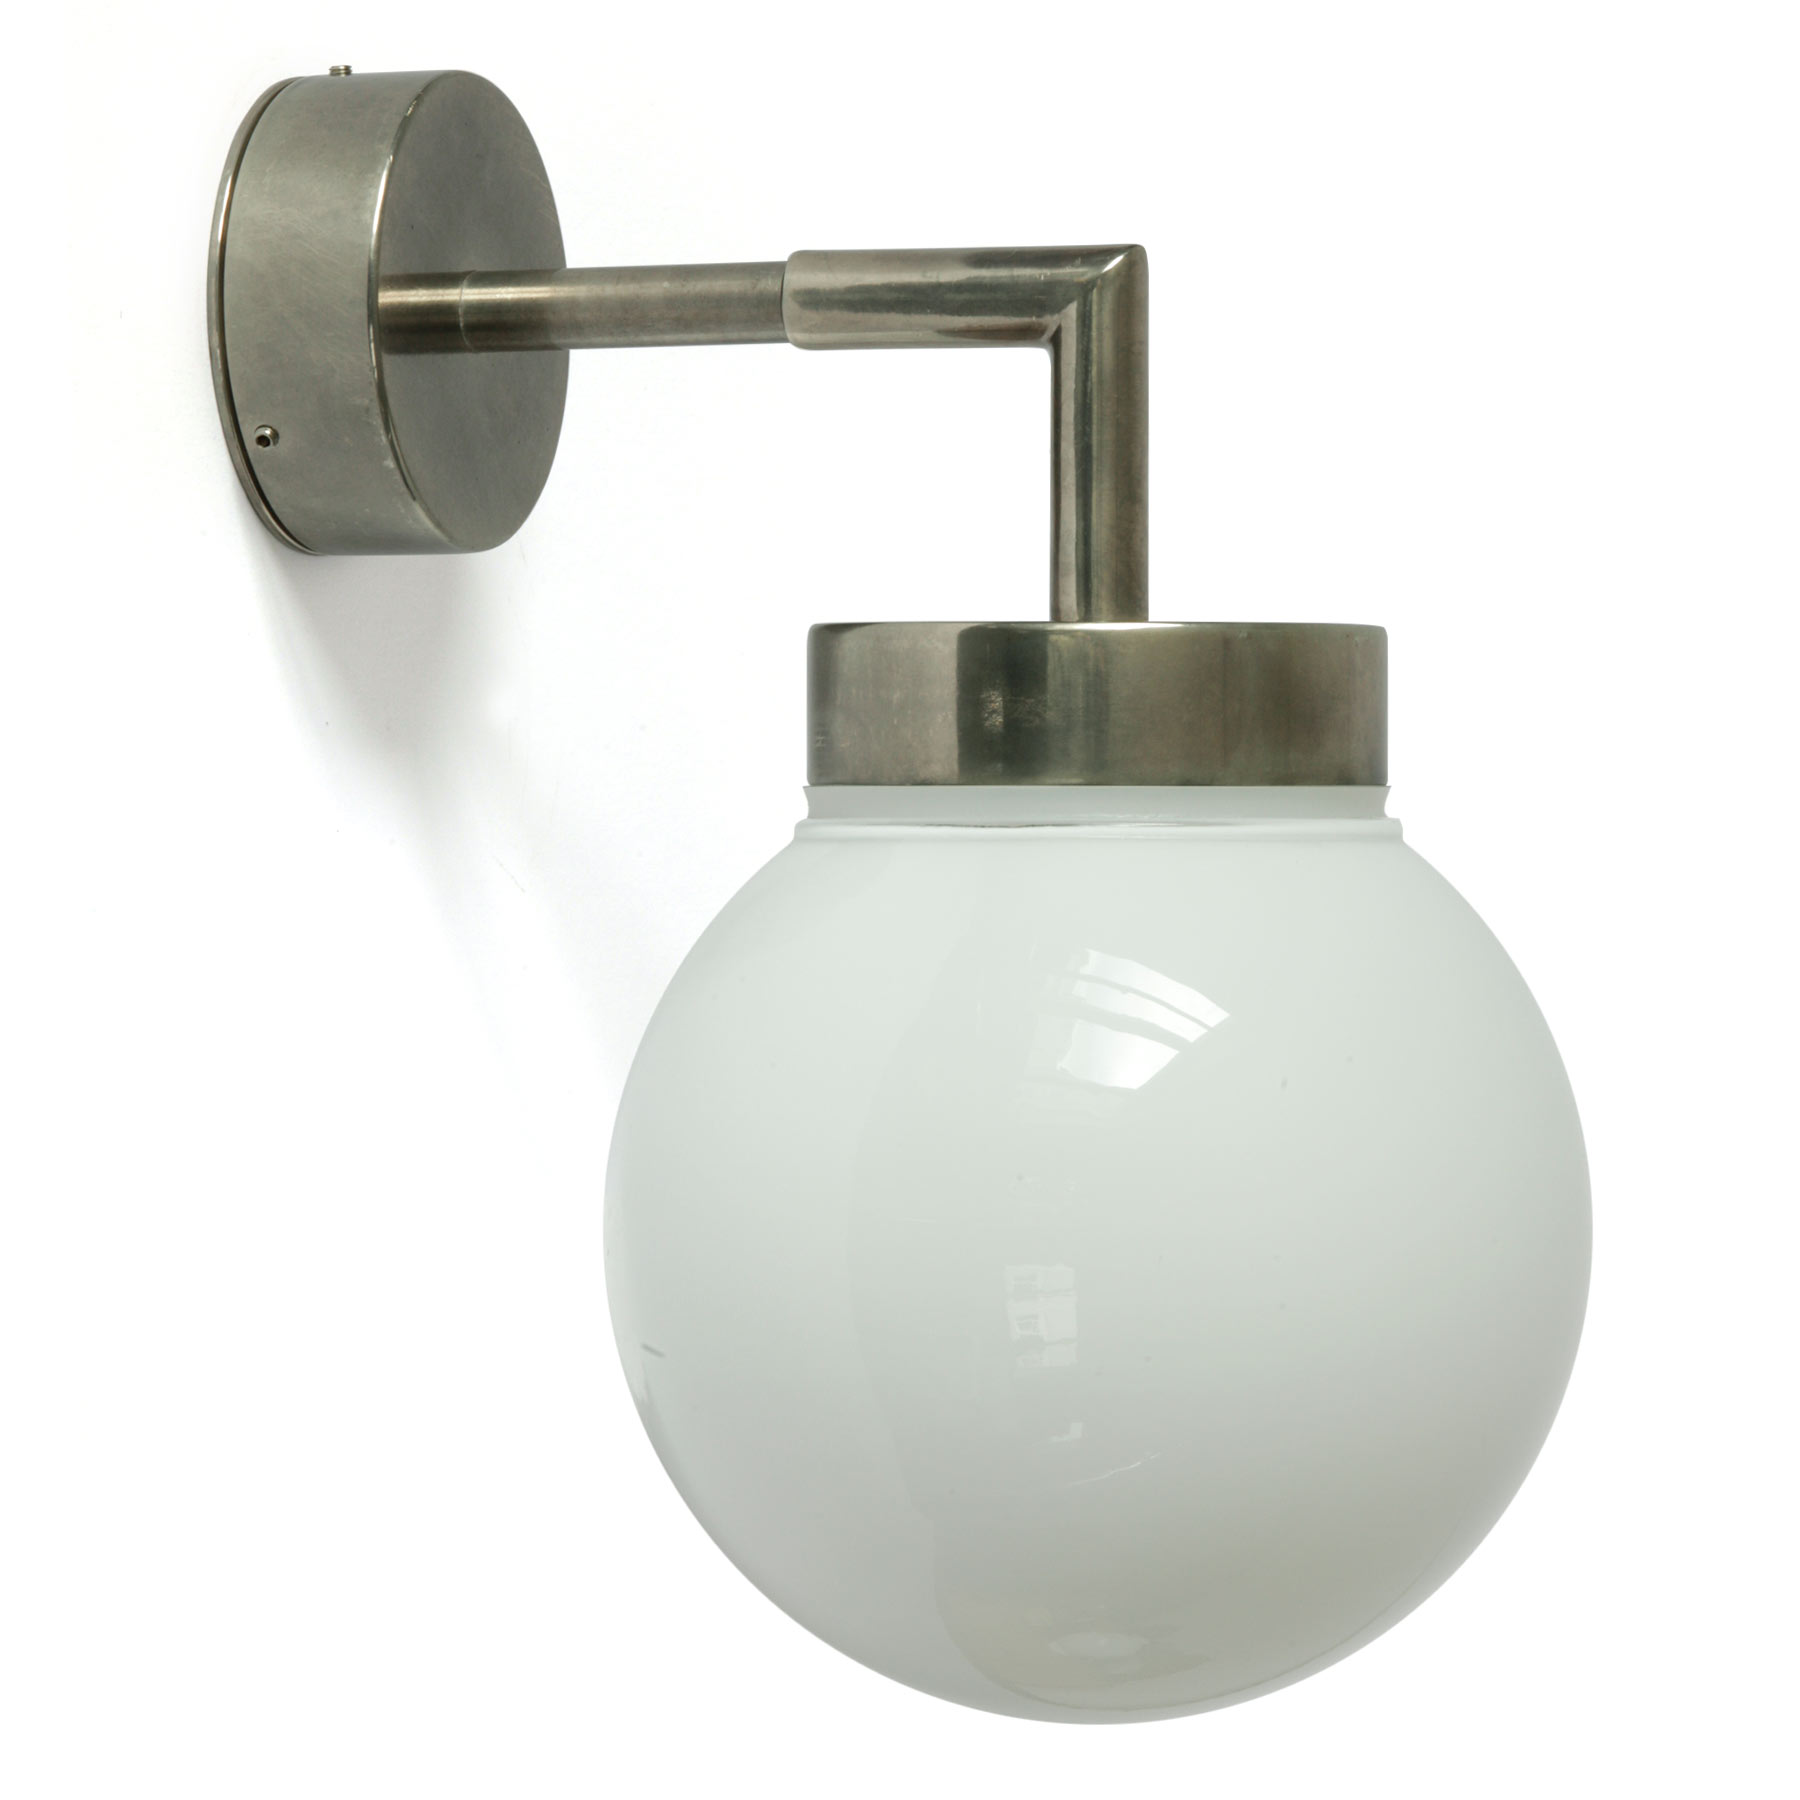 Badezimmer-Wandlampe mit Glaskugel, Ø 15 cm: Badezimmer-Wandleuchte mit Glaskugel Ø 15 cm, hier Messing alt-silbern patiniert, opales Glas